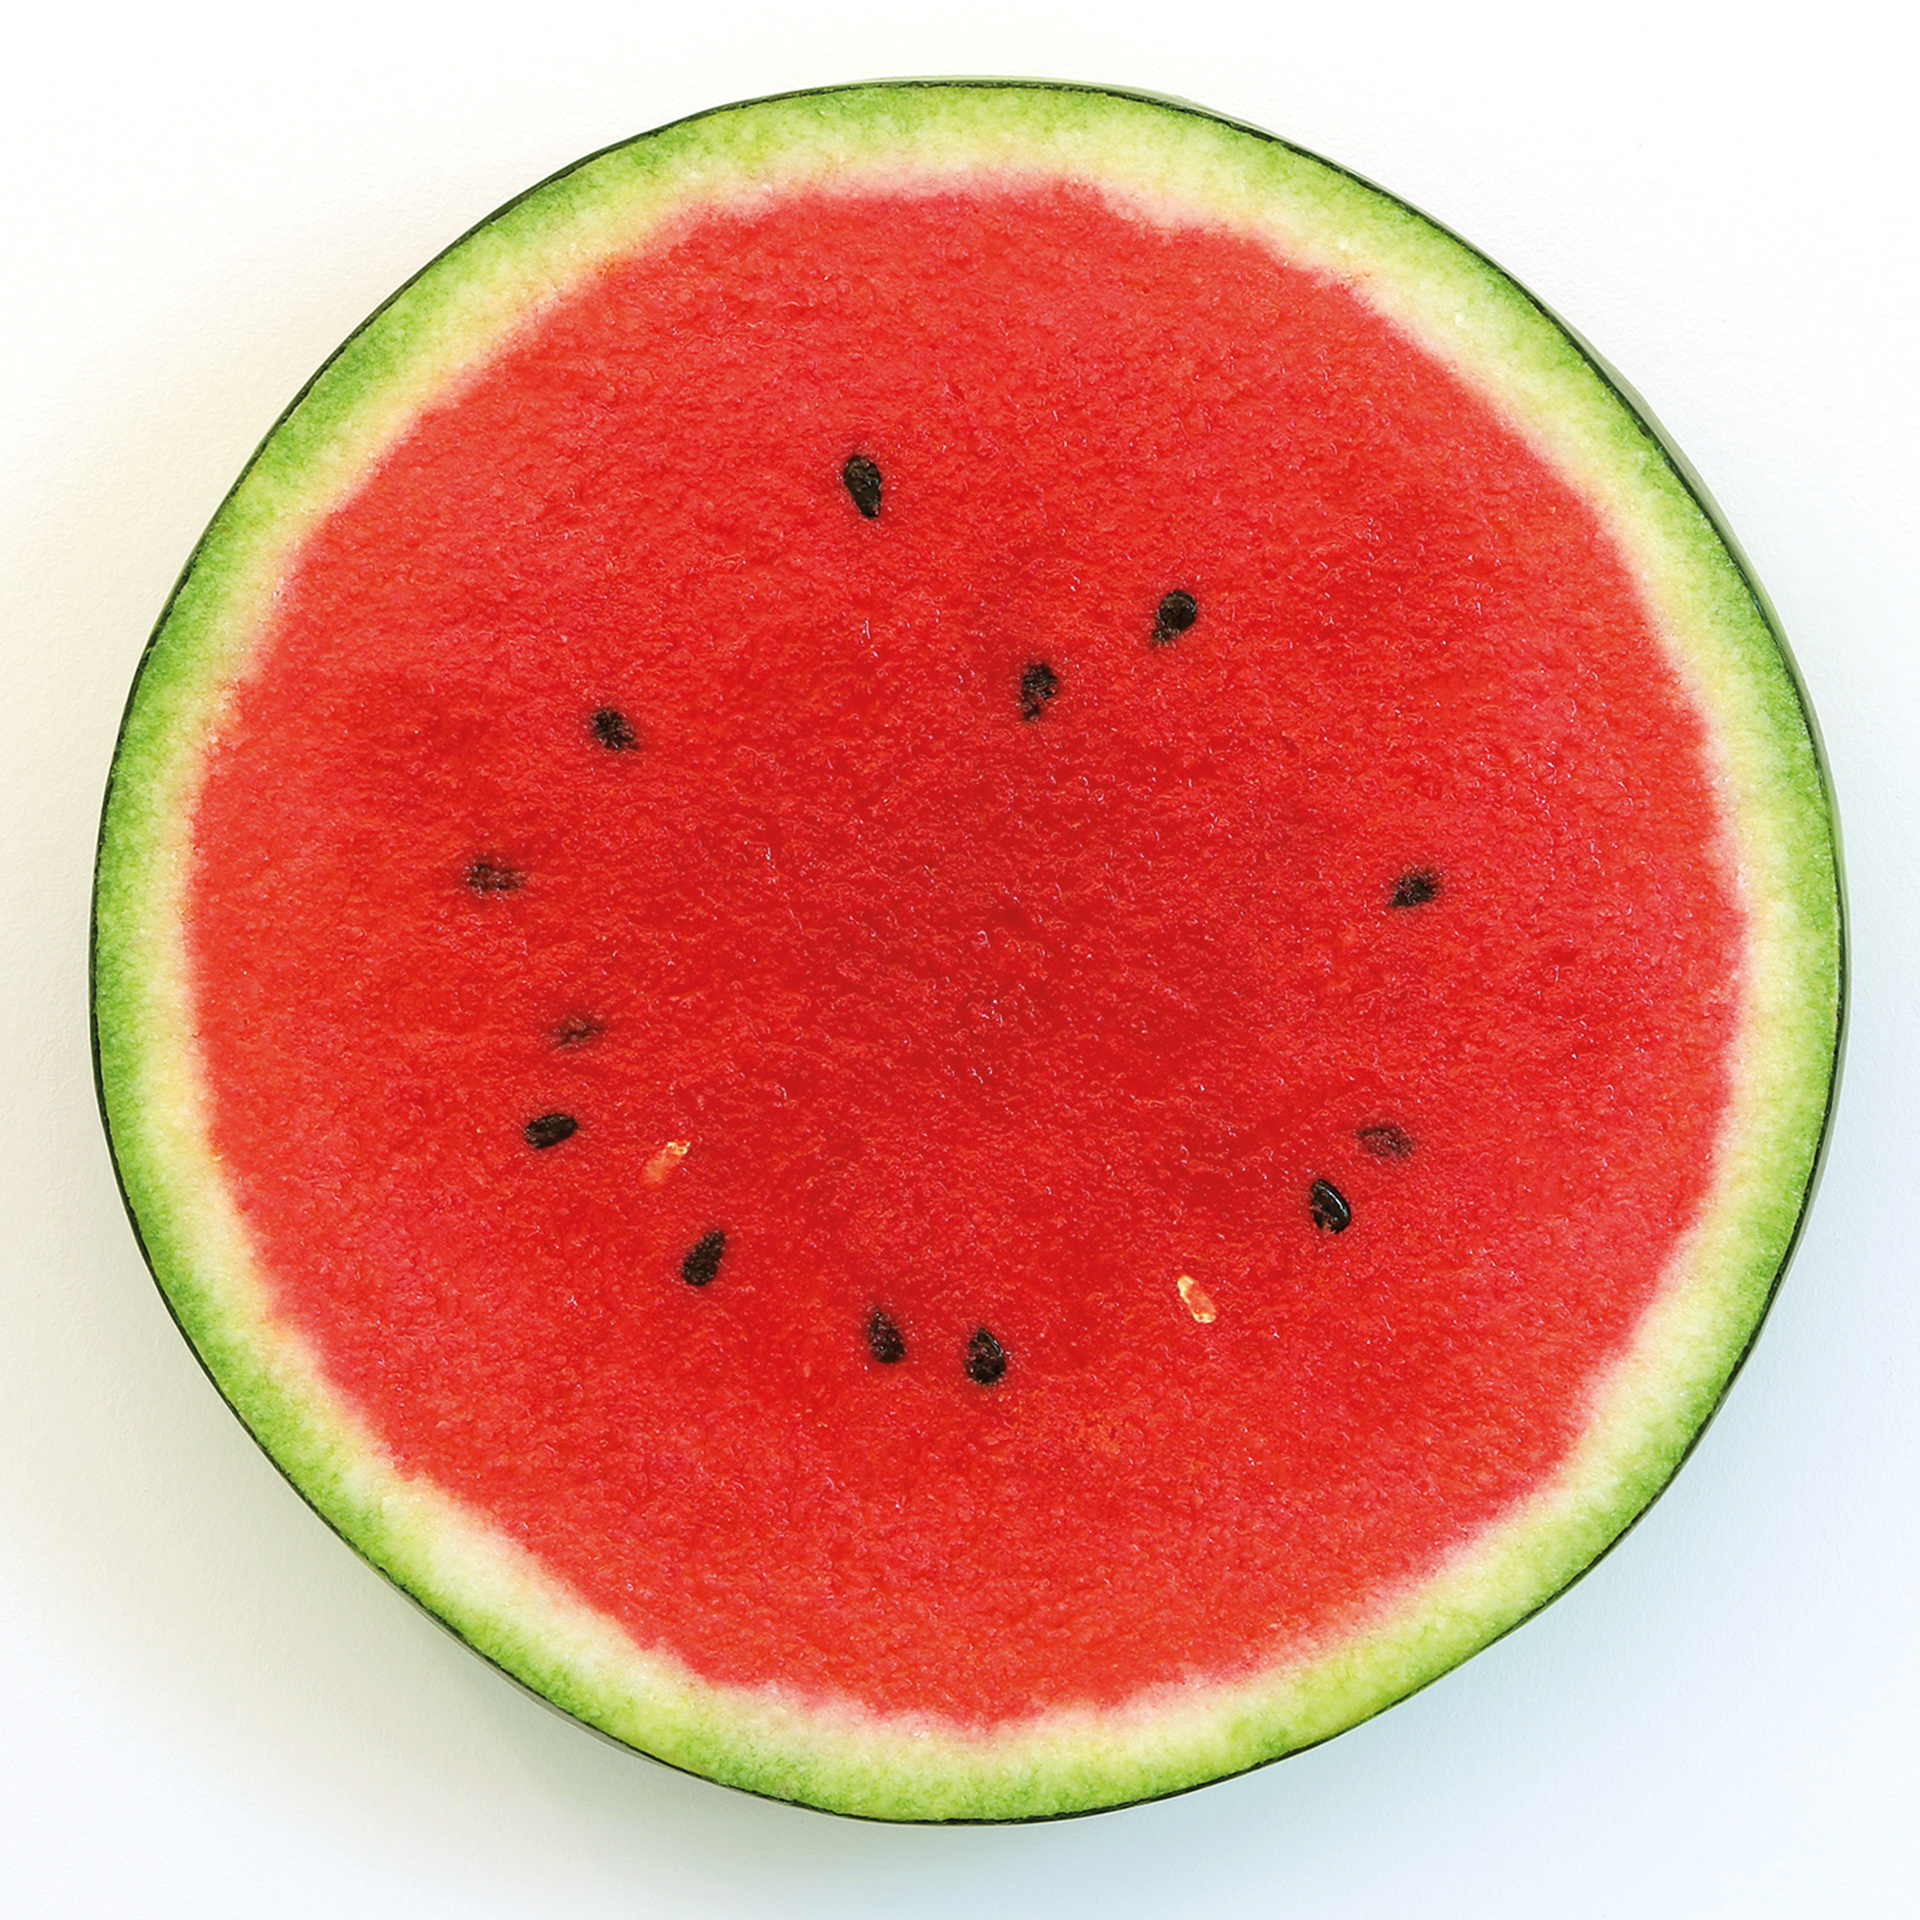 Abbildung von Peter Antons Werk slice of watermelon. Zu sehen ist eine aufgeschnittene Wassermelone.